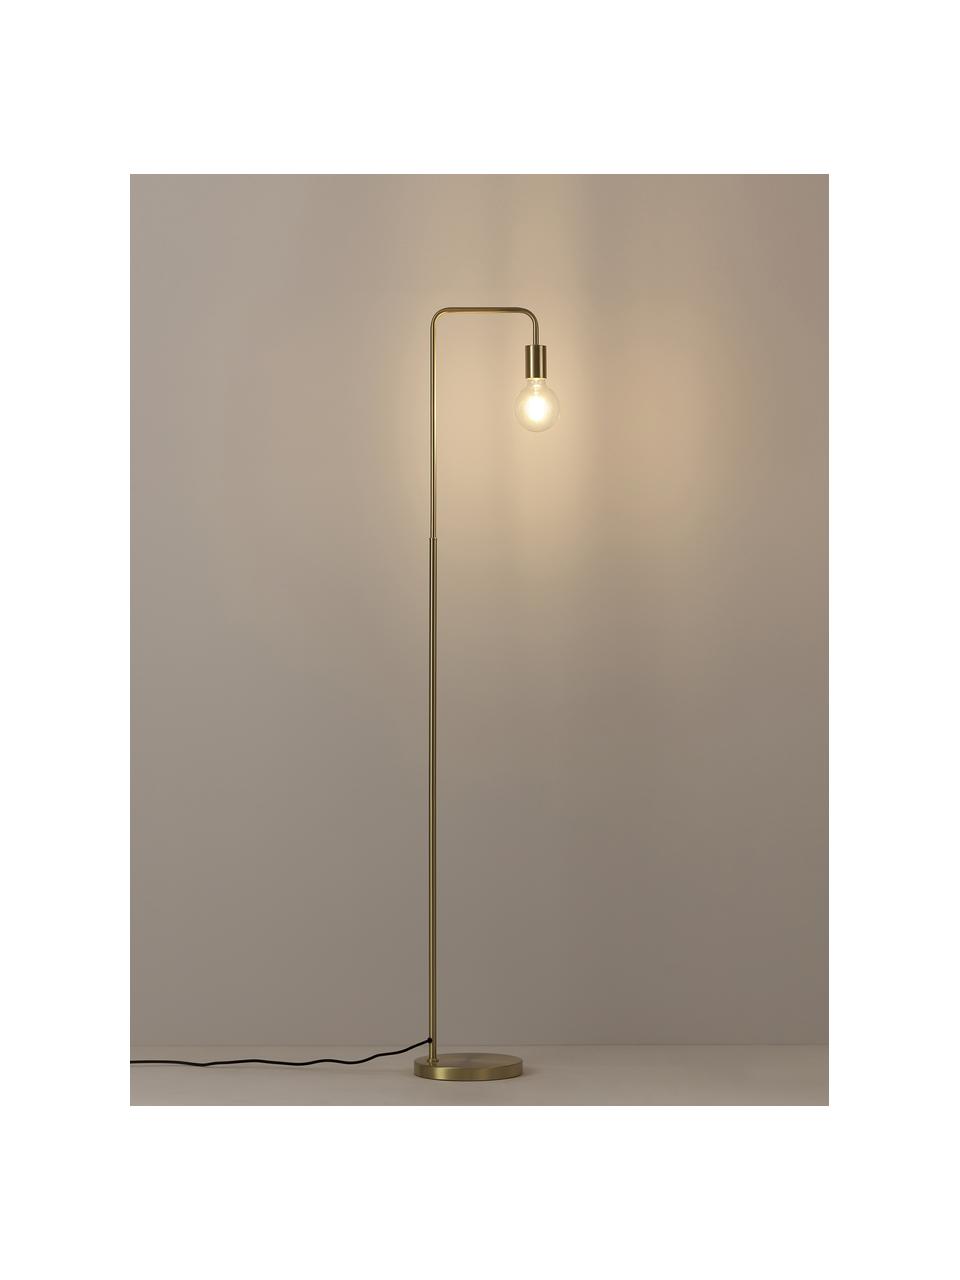 Lámpara de lectura de metal Flow, Lámpara: metal, latón, Cable: cubierto en tela, Dorado, Al 153 cm